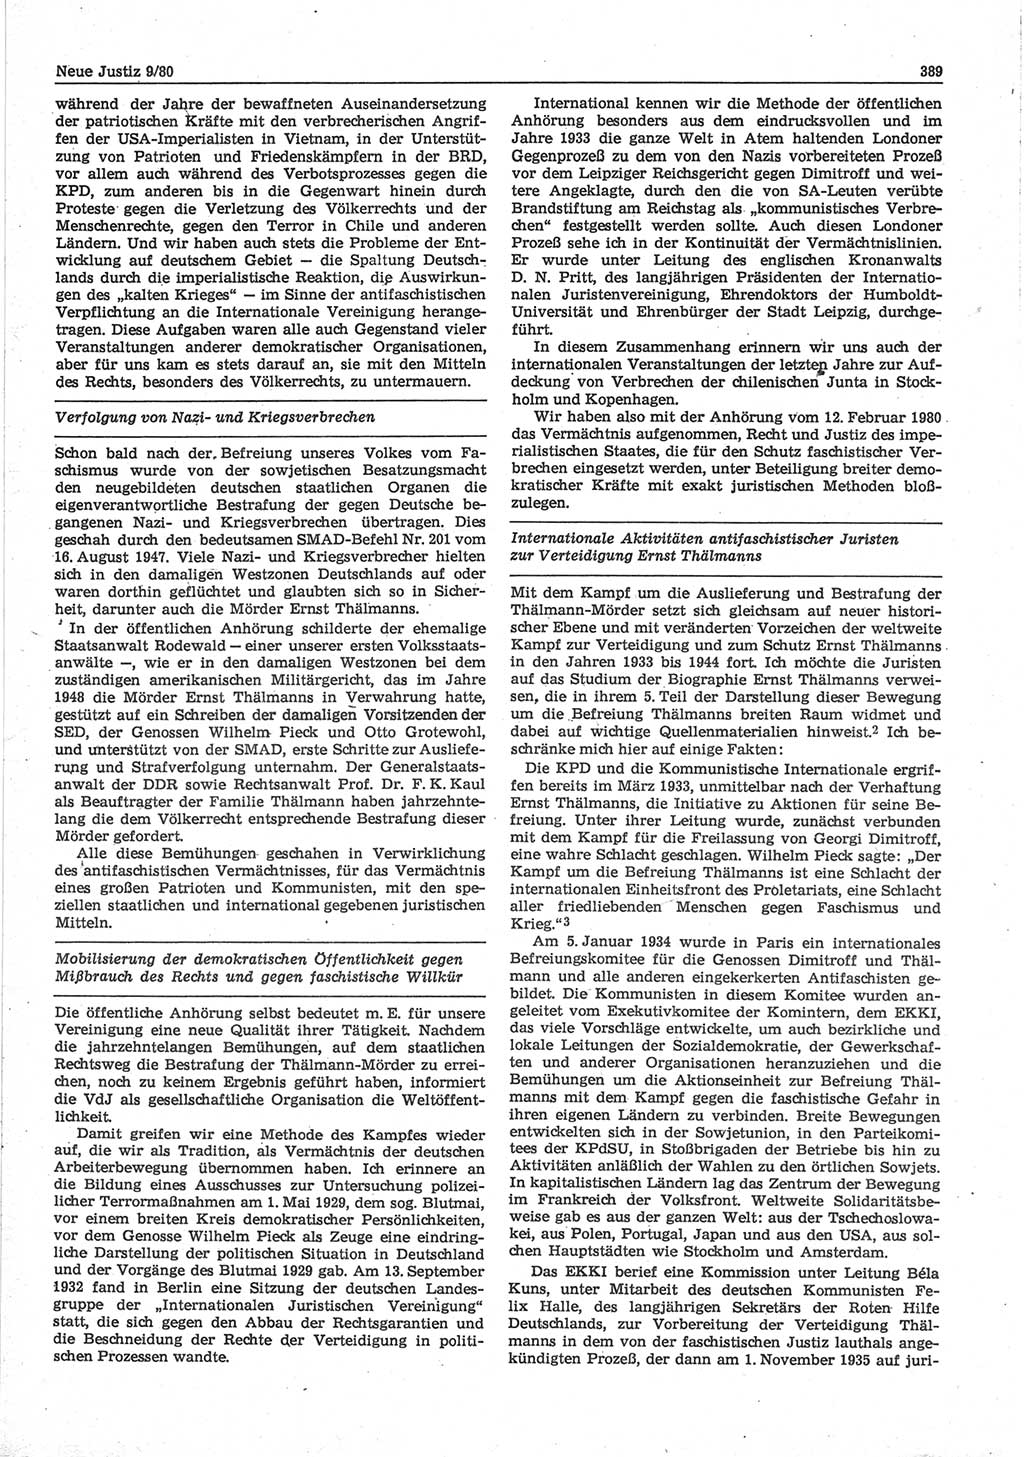 Neue Justiz (NJ), Zeitschrift für sozialistisches Recht und Gesetzlichkeit [Deutsche Demokratische Republik (DDR)], 34. Jahrgang 1980, Seite 389 (NJ DDR 1980, S. 389)